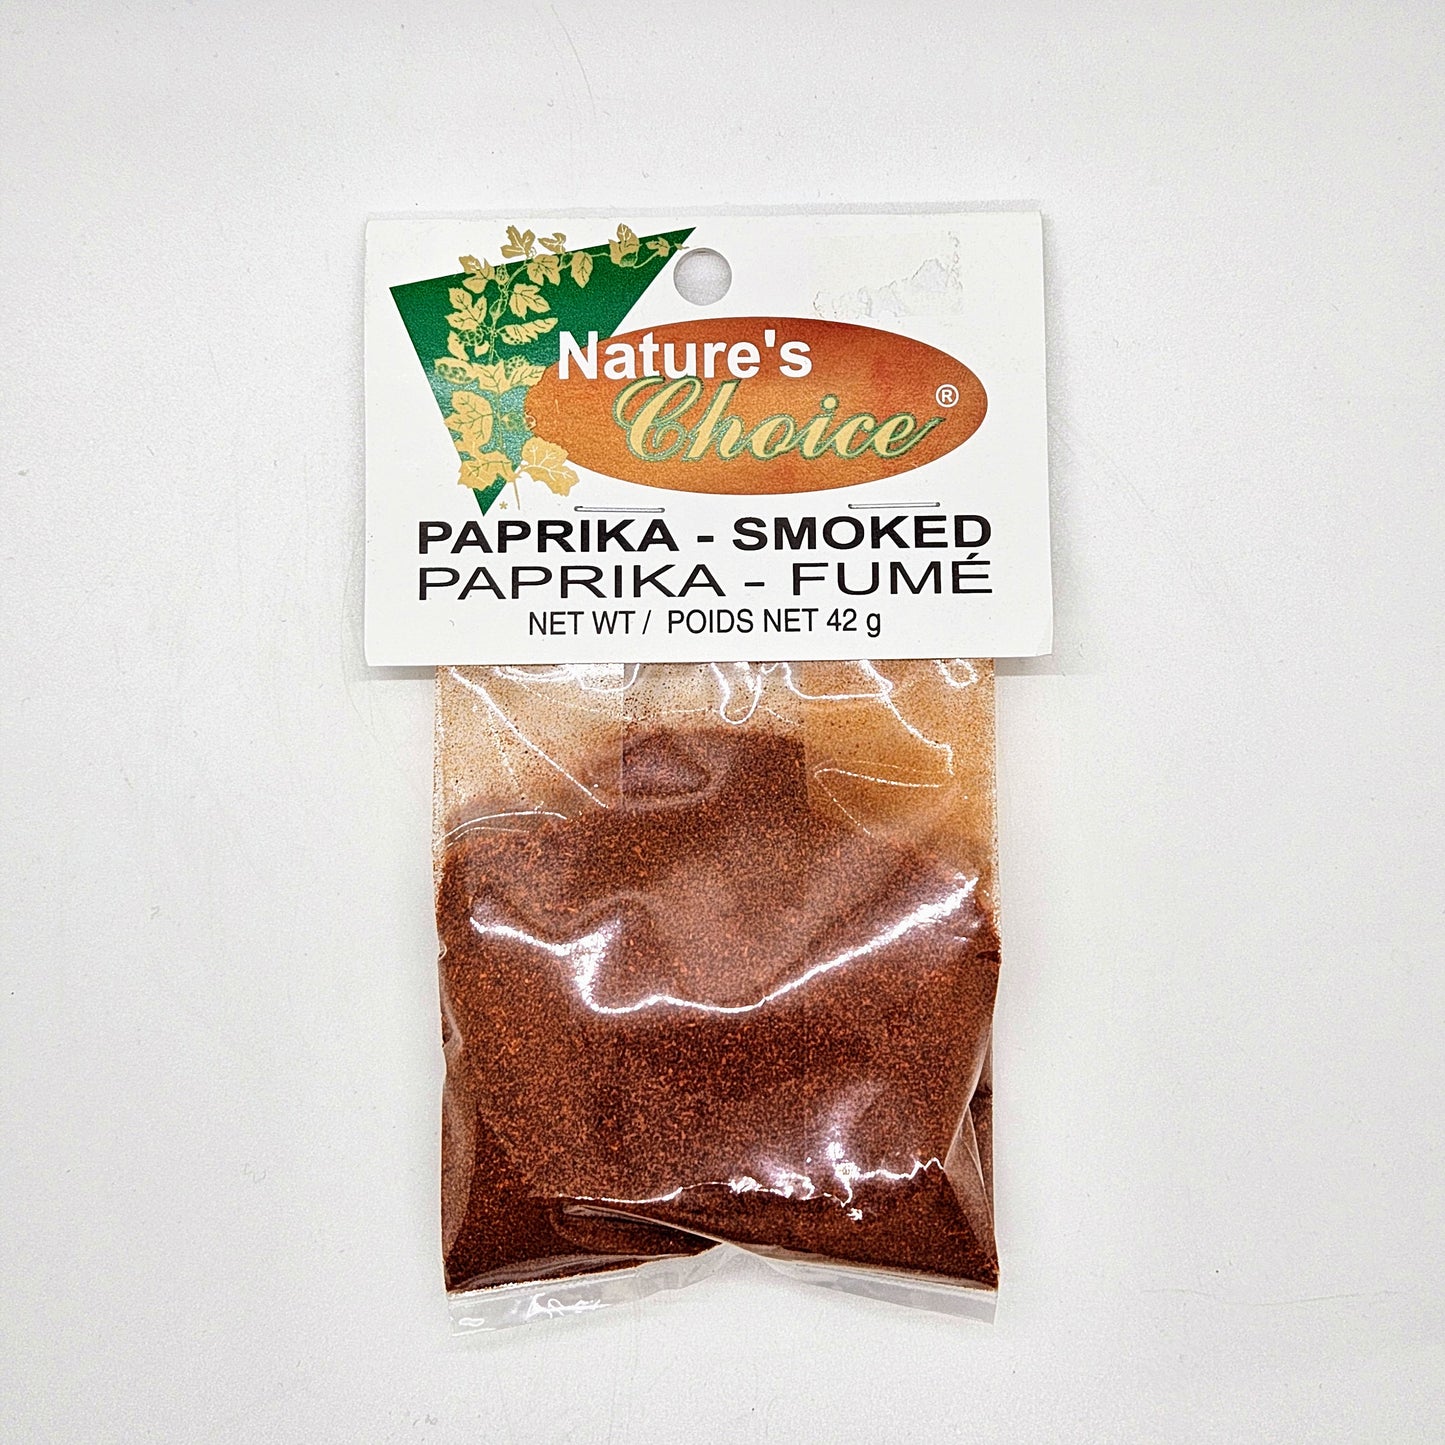 Paprika - Fumé